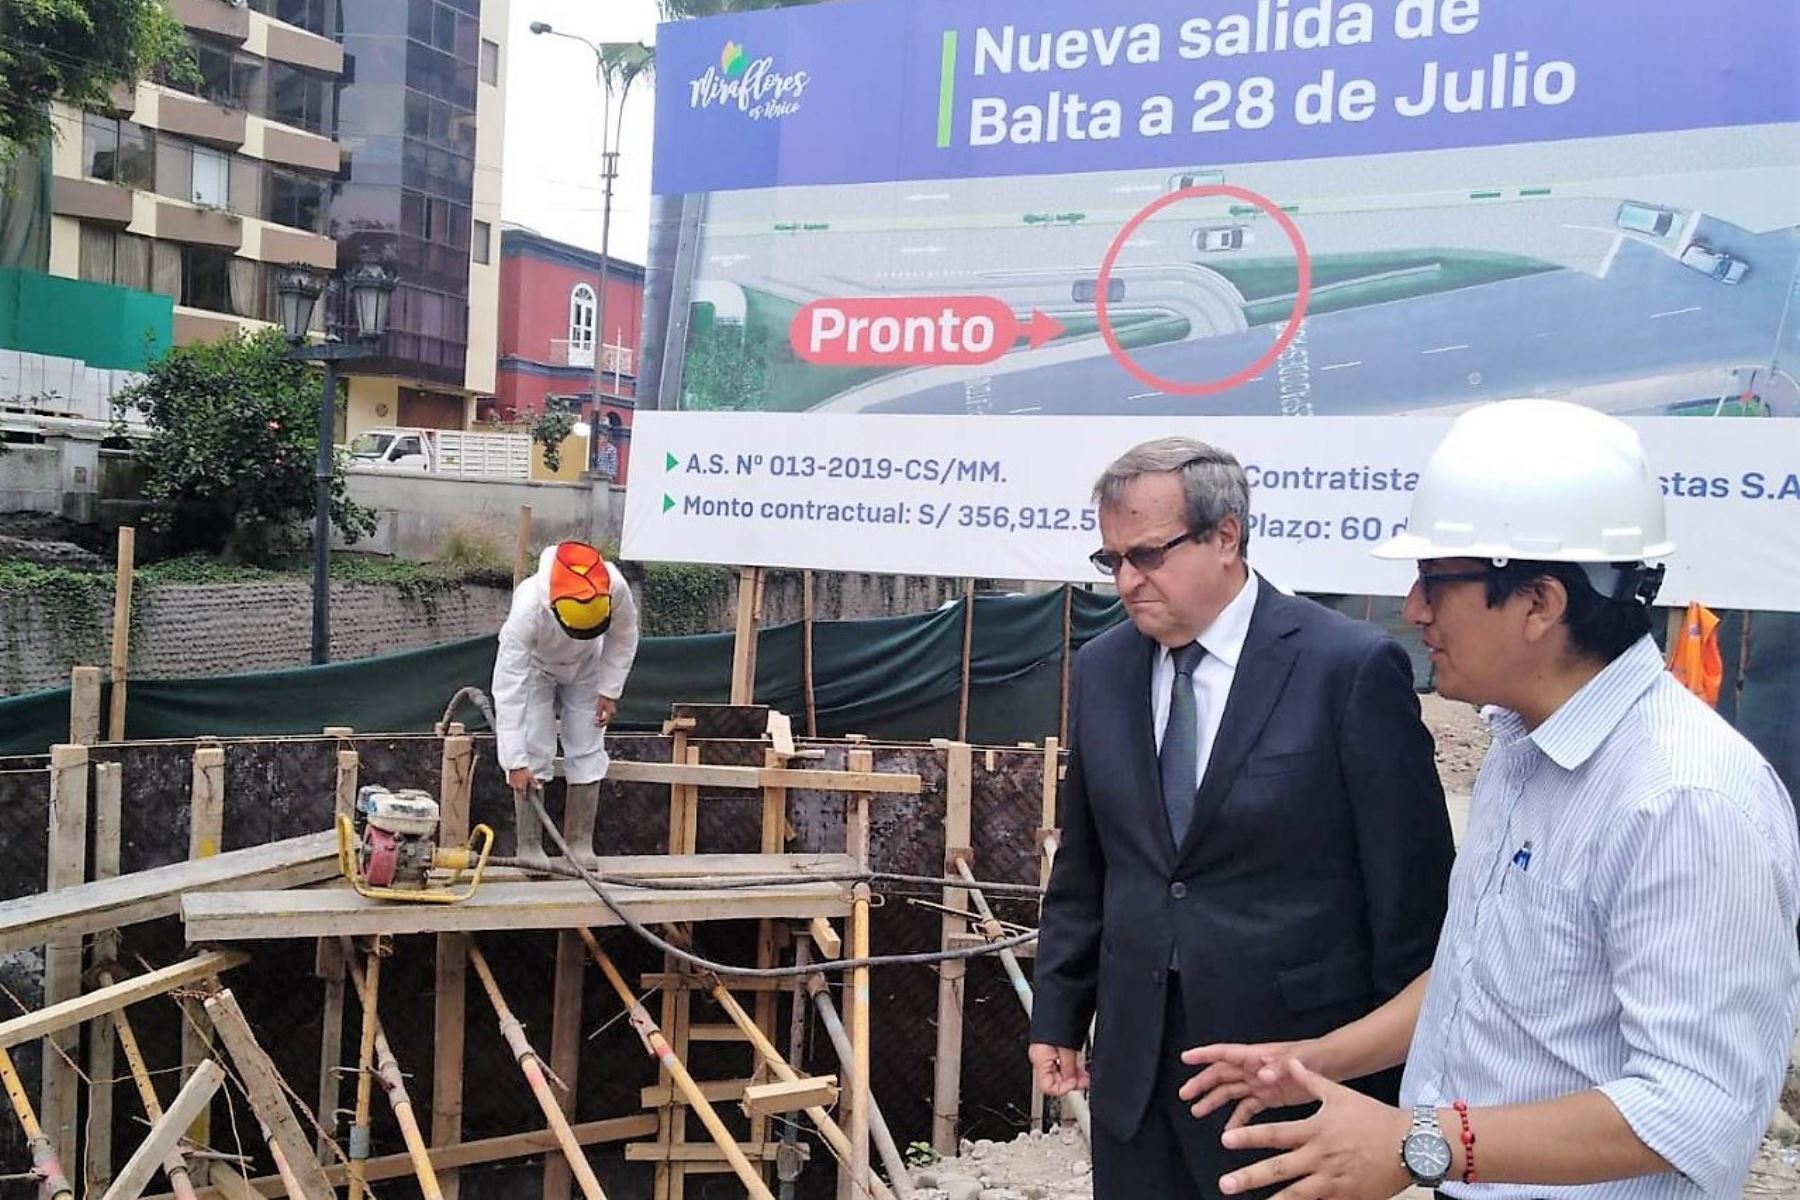 Alcalde de Miralfores, Luis Molina, inspecciona el avance de las obras en la calle Bajada Balta.